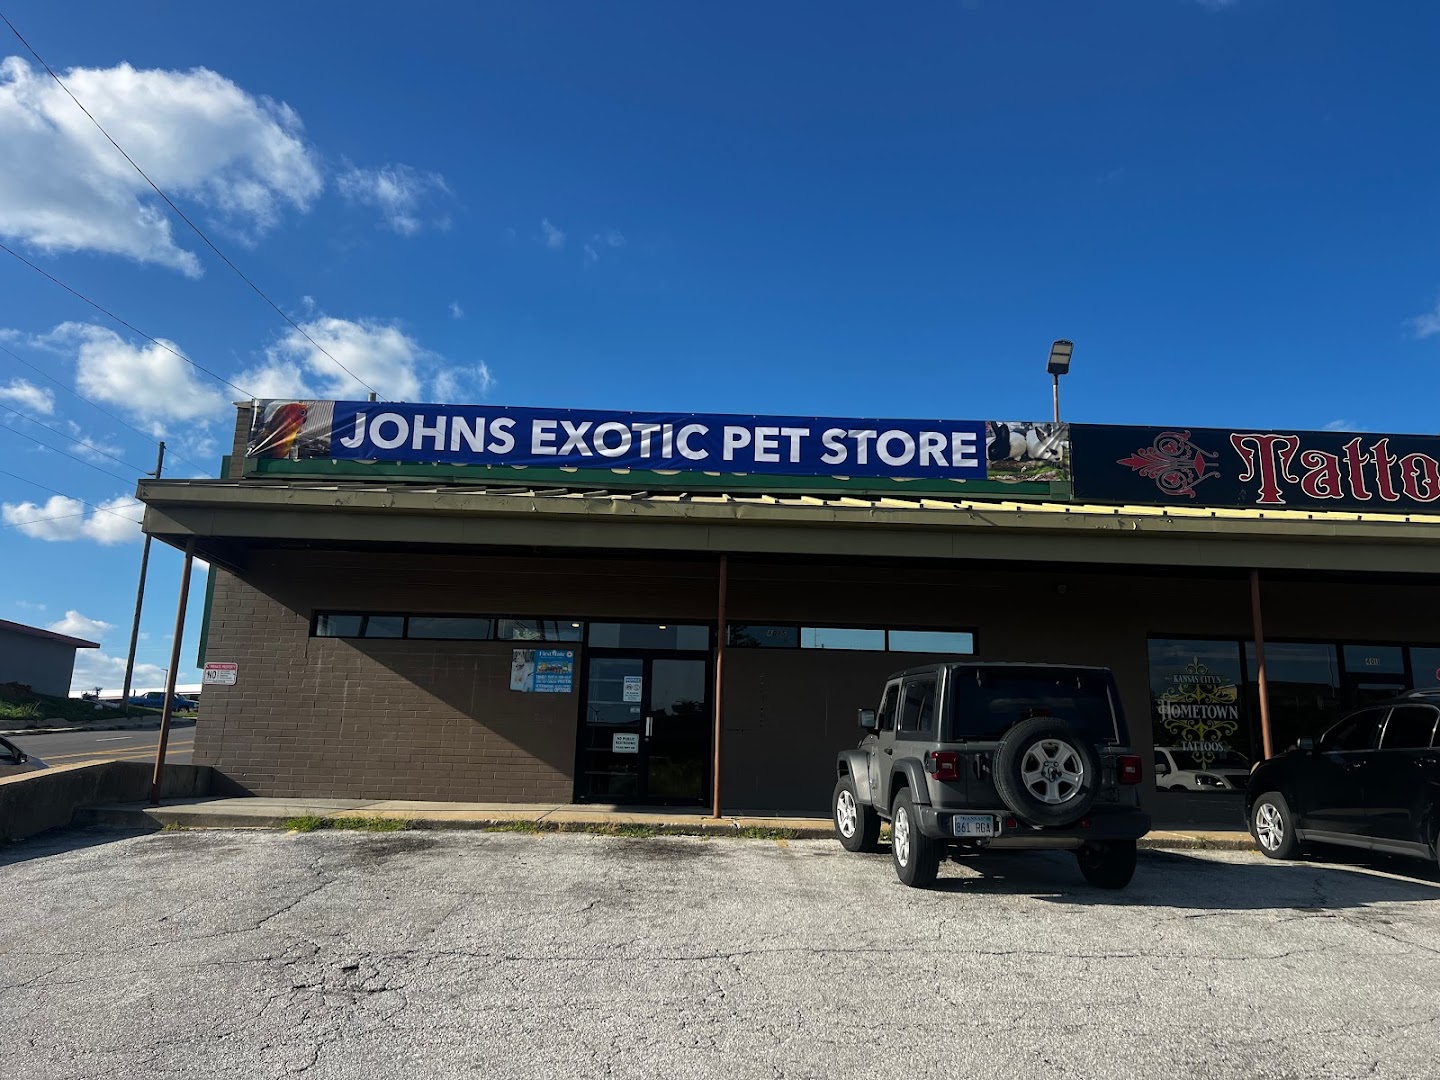 John’s Exotic Pet Store